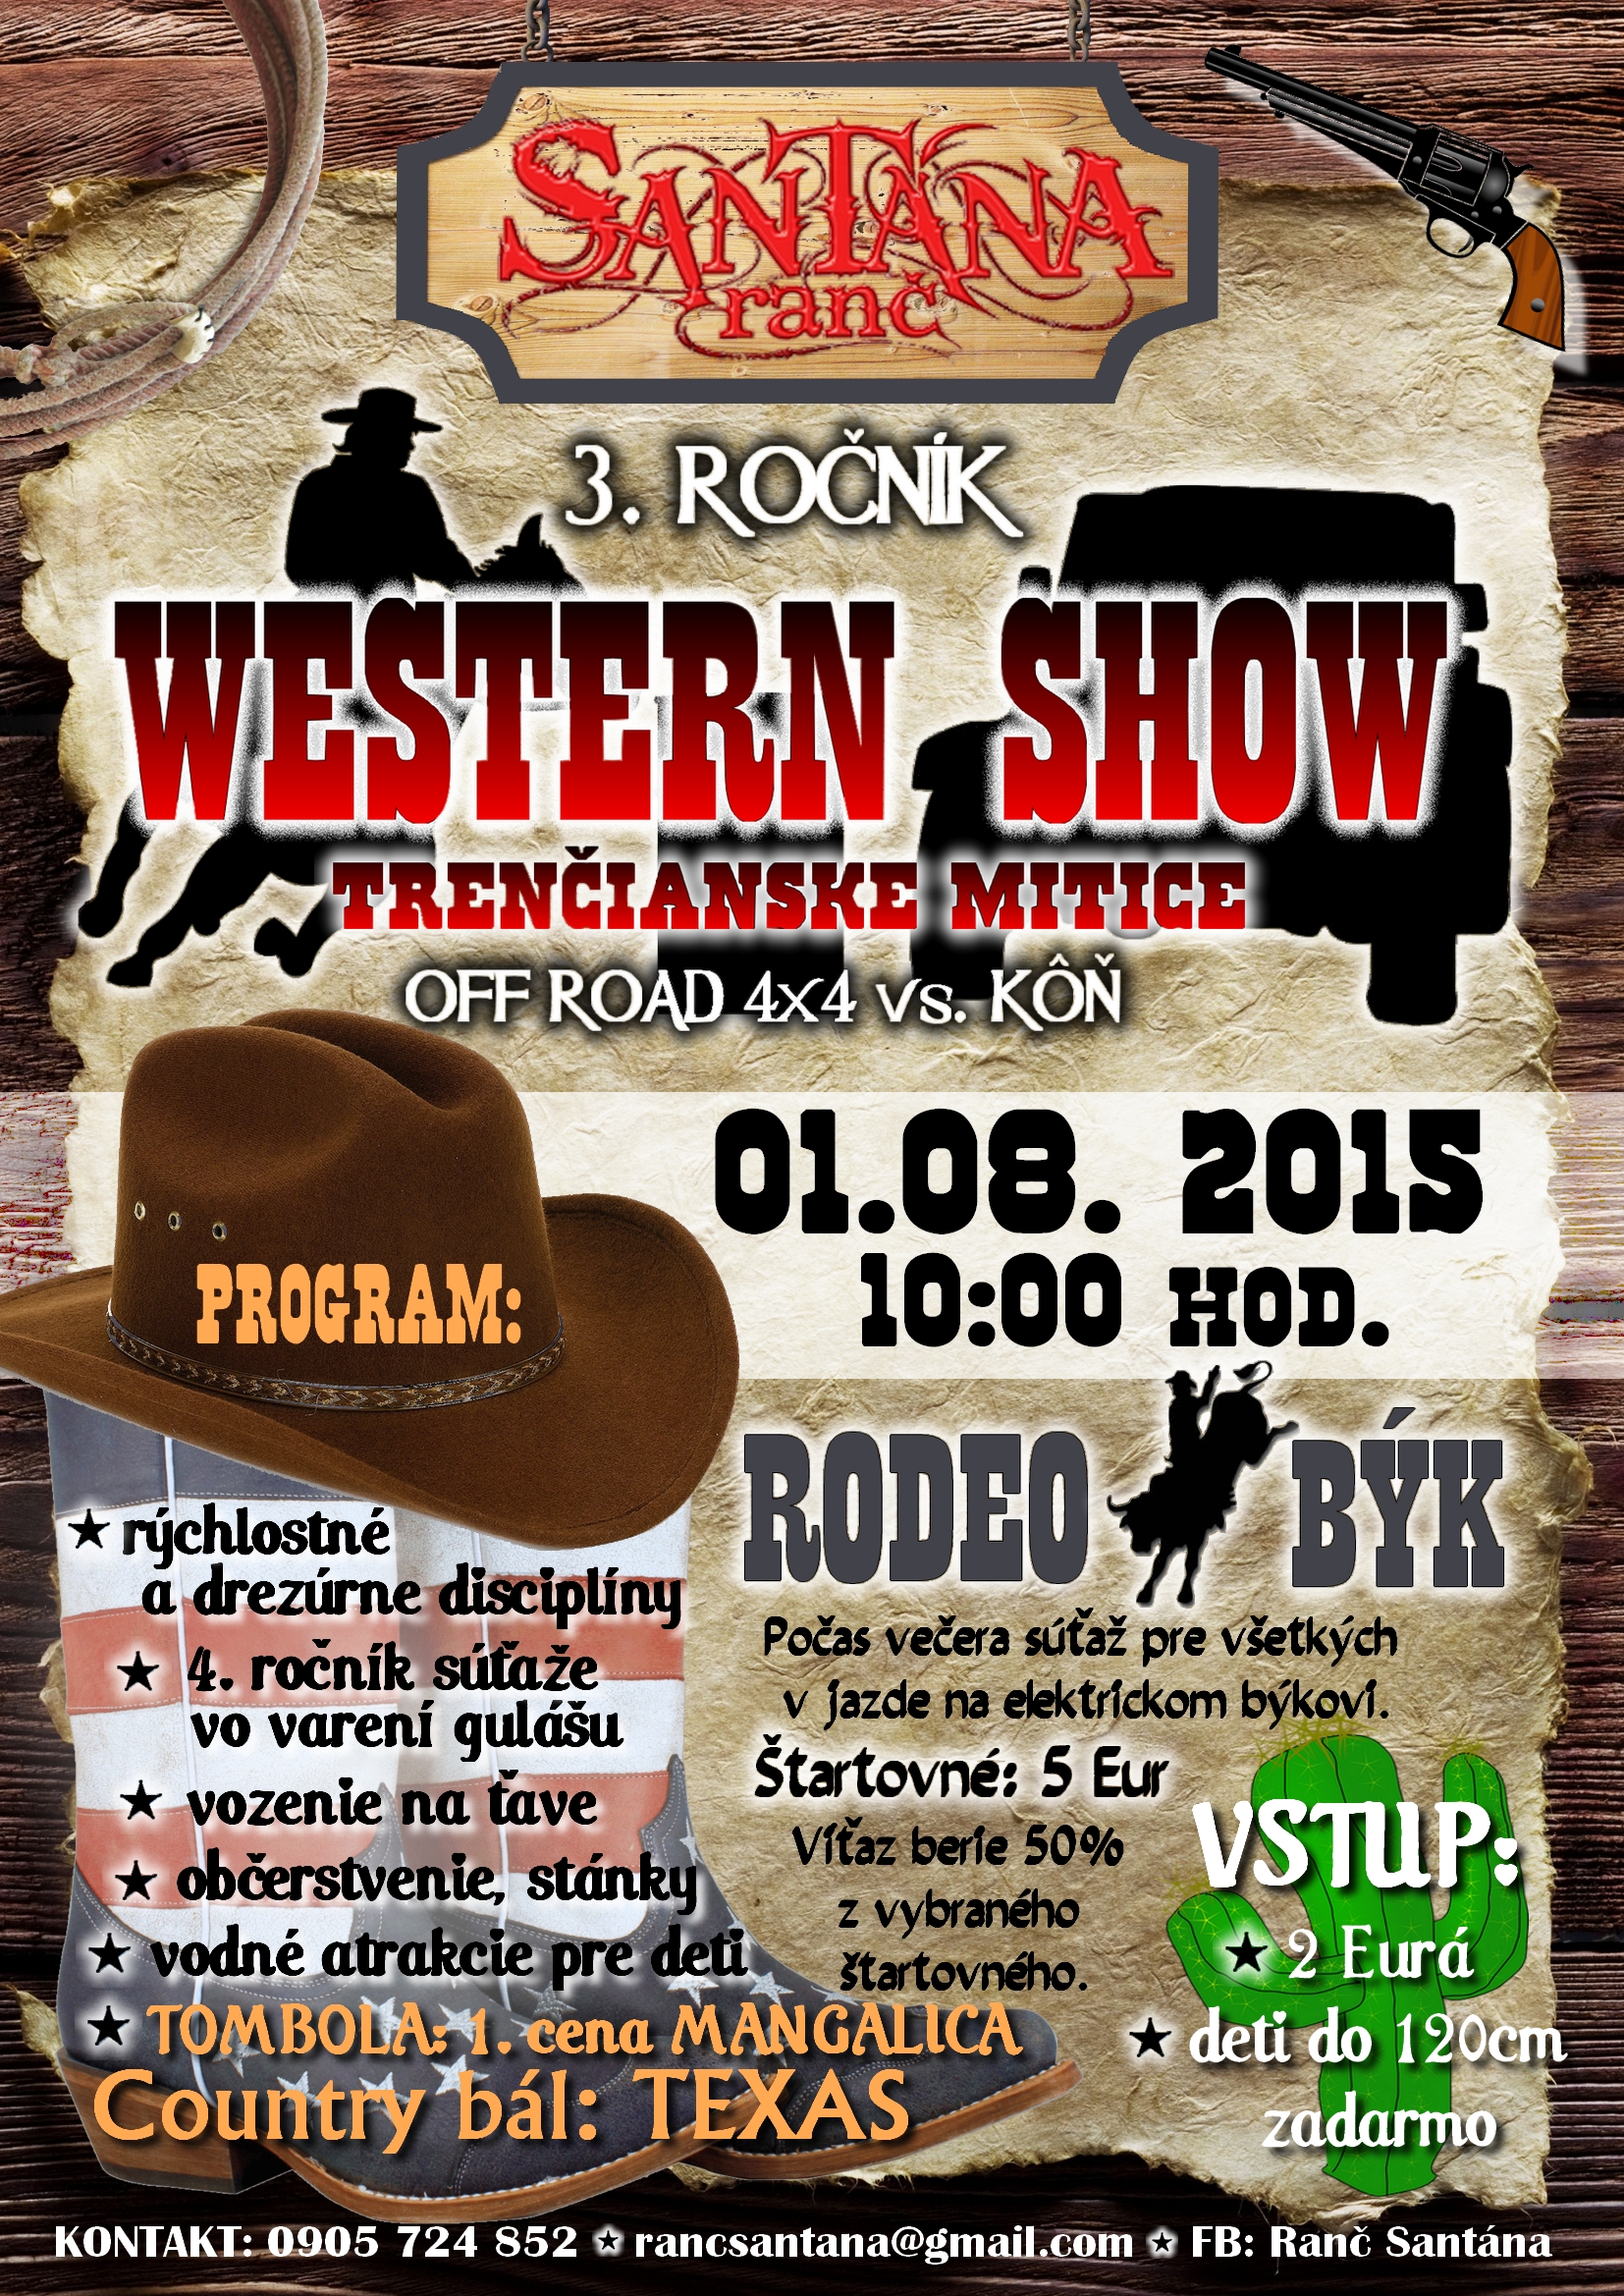 Western show  2015 Trenianske Mitice - 3. ronk